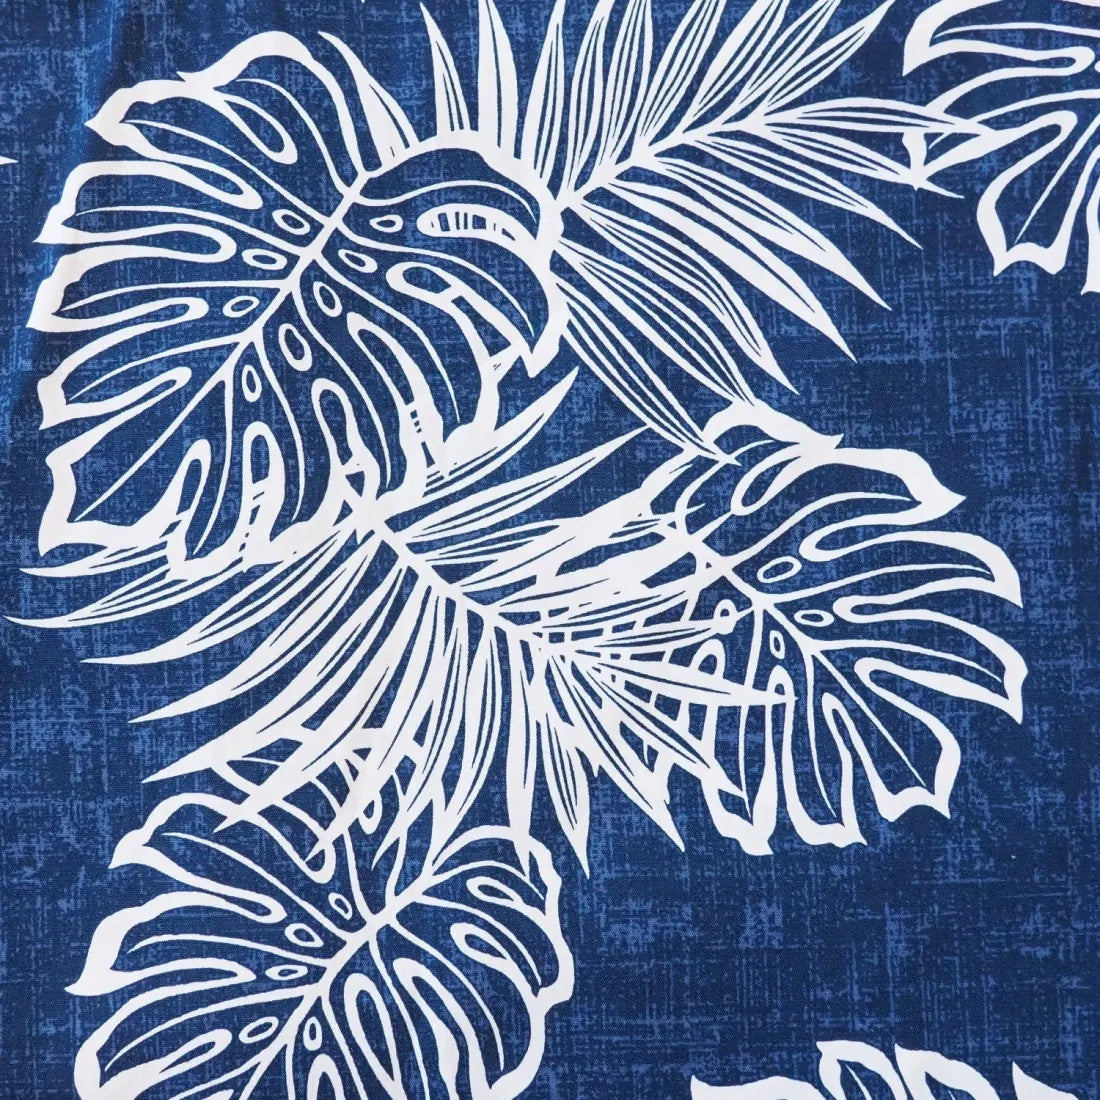 Leaf Navy Blue Hawaiian Cotton Shirt - Made In Hawaii